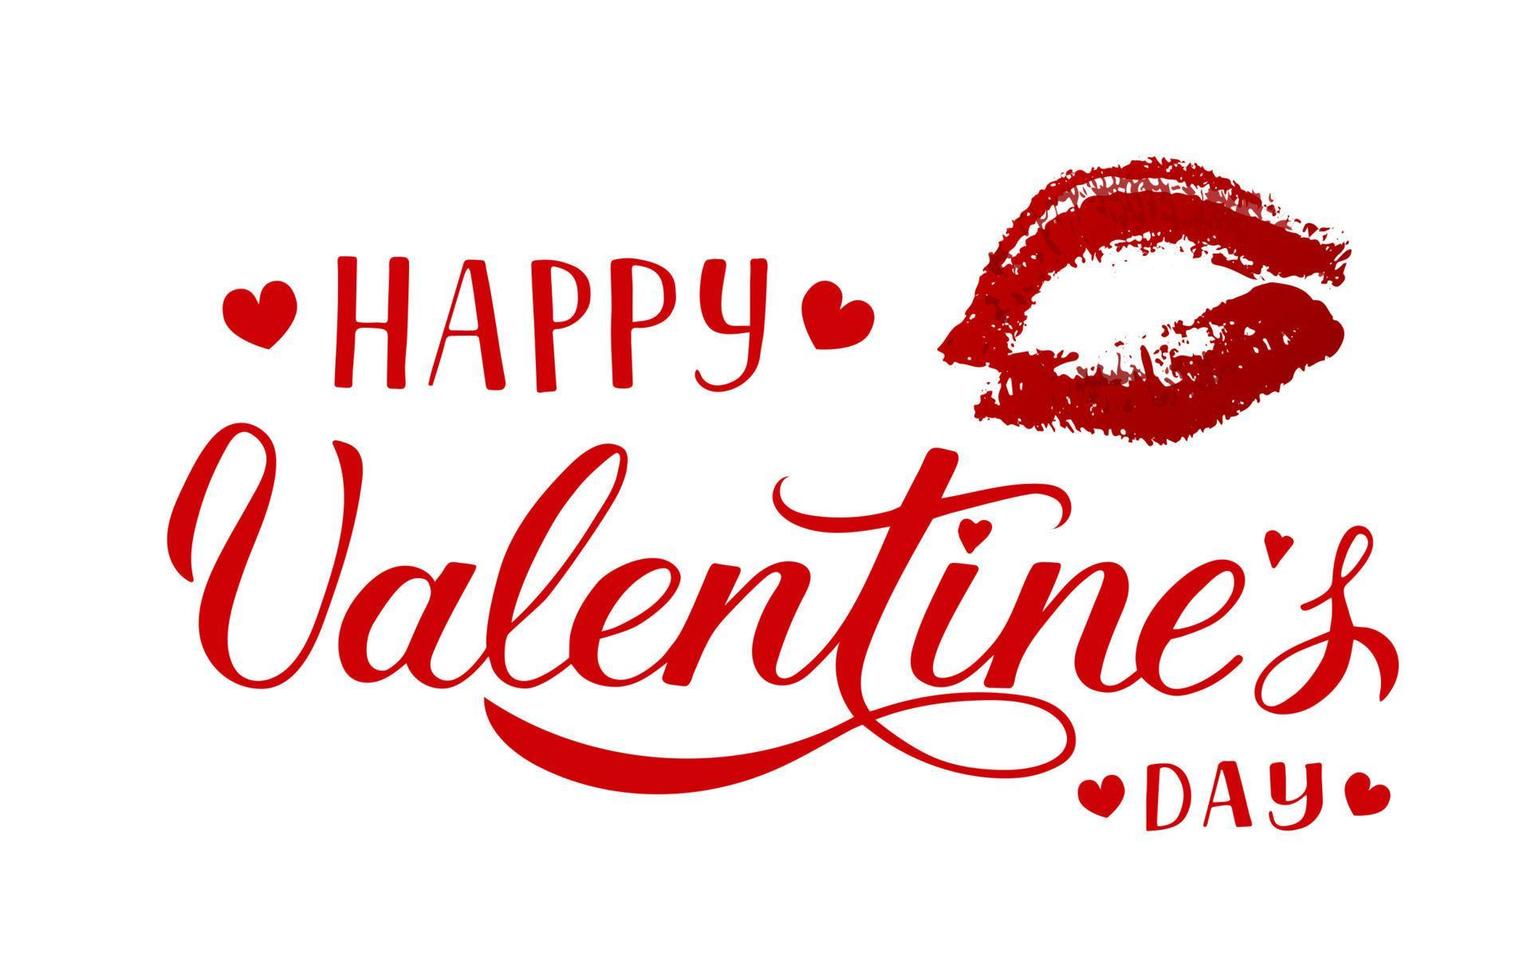 Happy Valentines Day Kalligrafie Schriftzug mit rotem Lippenstift Kuss isoliert auf weiß. Abdruck der Lippen. vektorvorlage für valentinstaggrußkarte, partyeinladung, flyer, banner usw. vektor